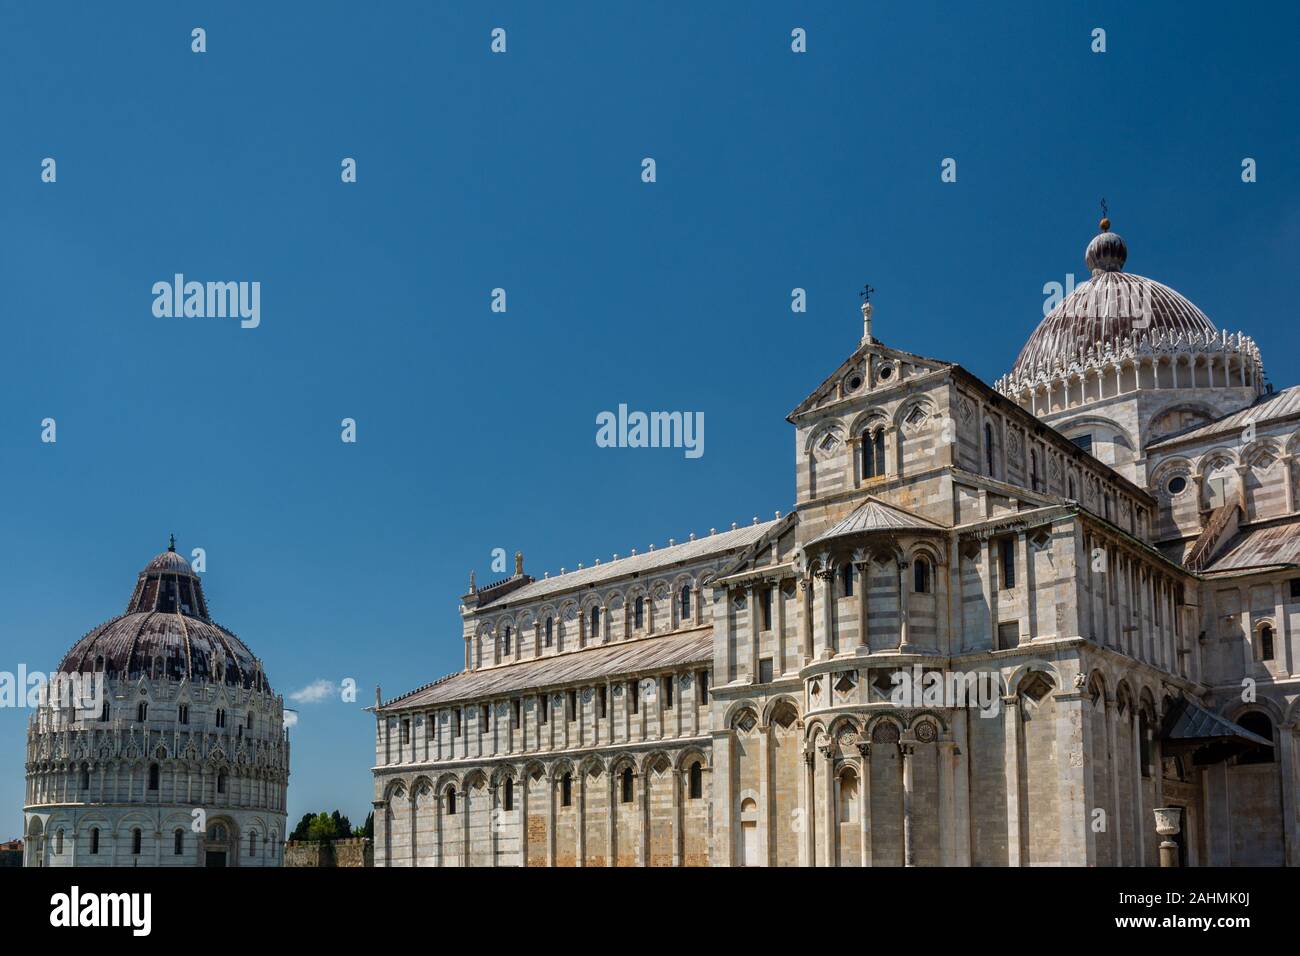 Pisa, Italia - 6 de junio de 2019 : La Catedral de Pisa es una catedral Católica Romana medieval dedicada a la asunción de la Virgen María, en la Piazza dei M Foto de stock